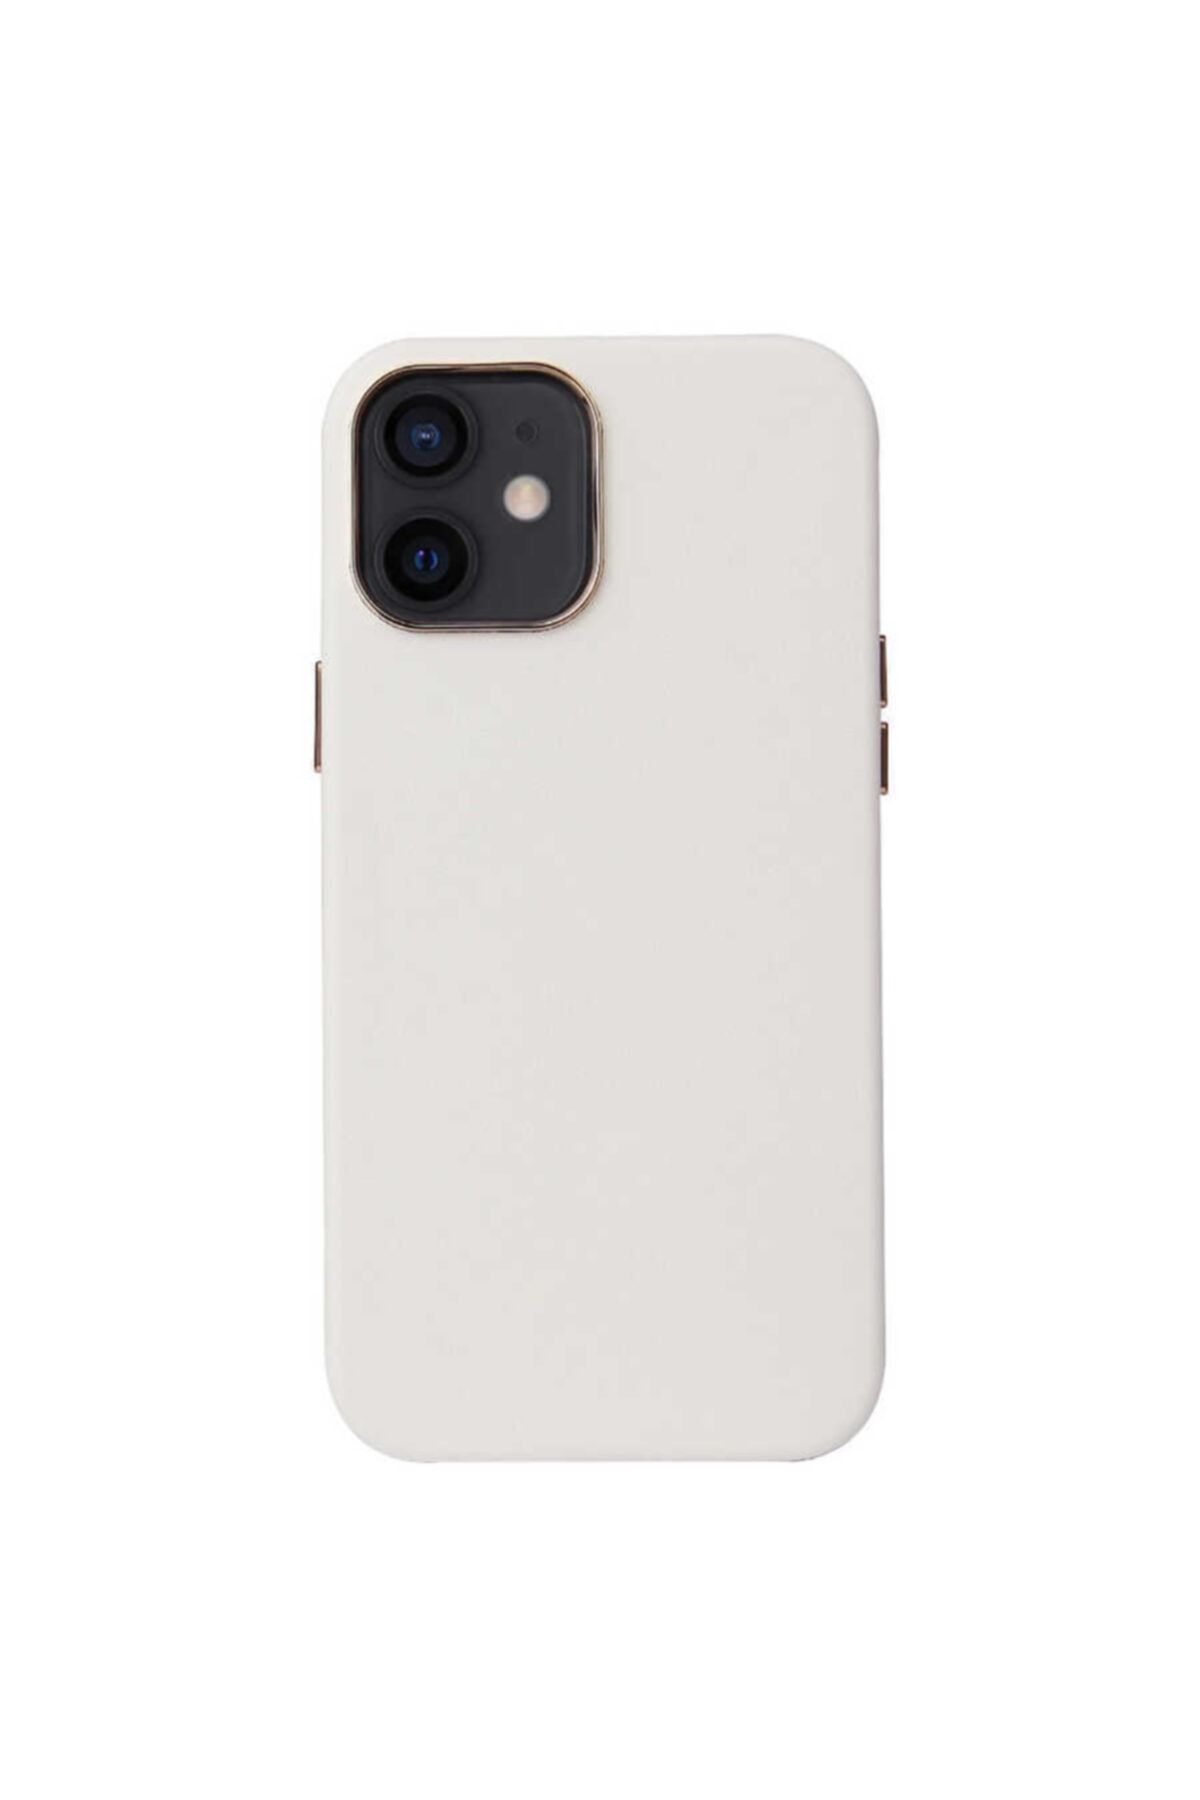 Apple Iphone 12 Magsafe Wireless Sarj Uyumlu Kılıf Leather Deri Kaplama Kadife